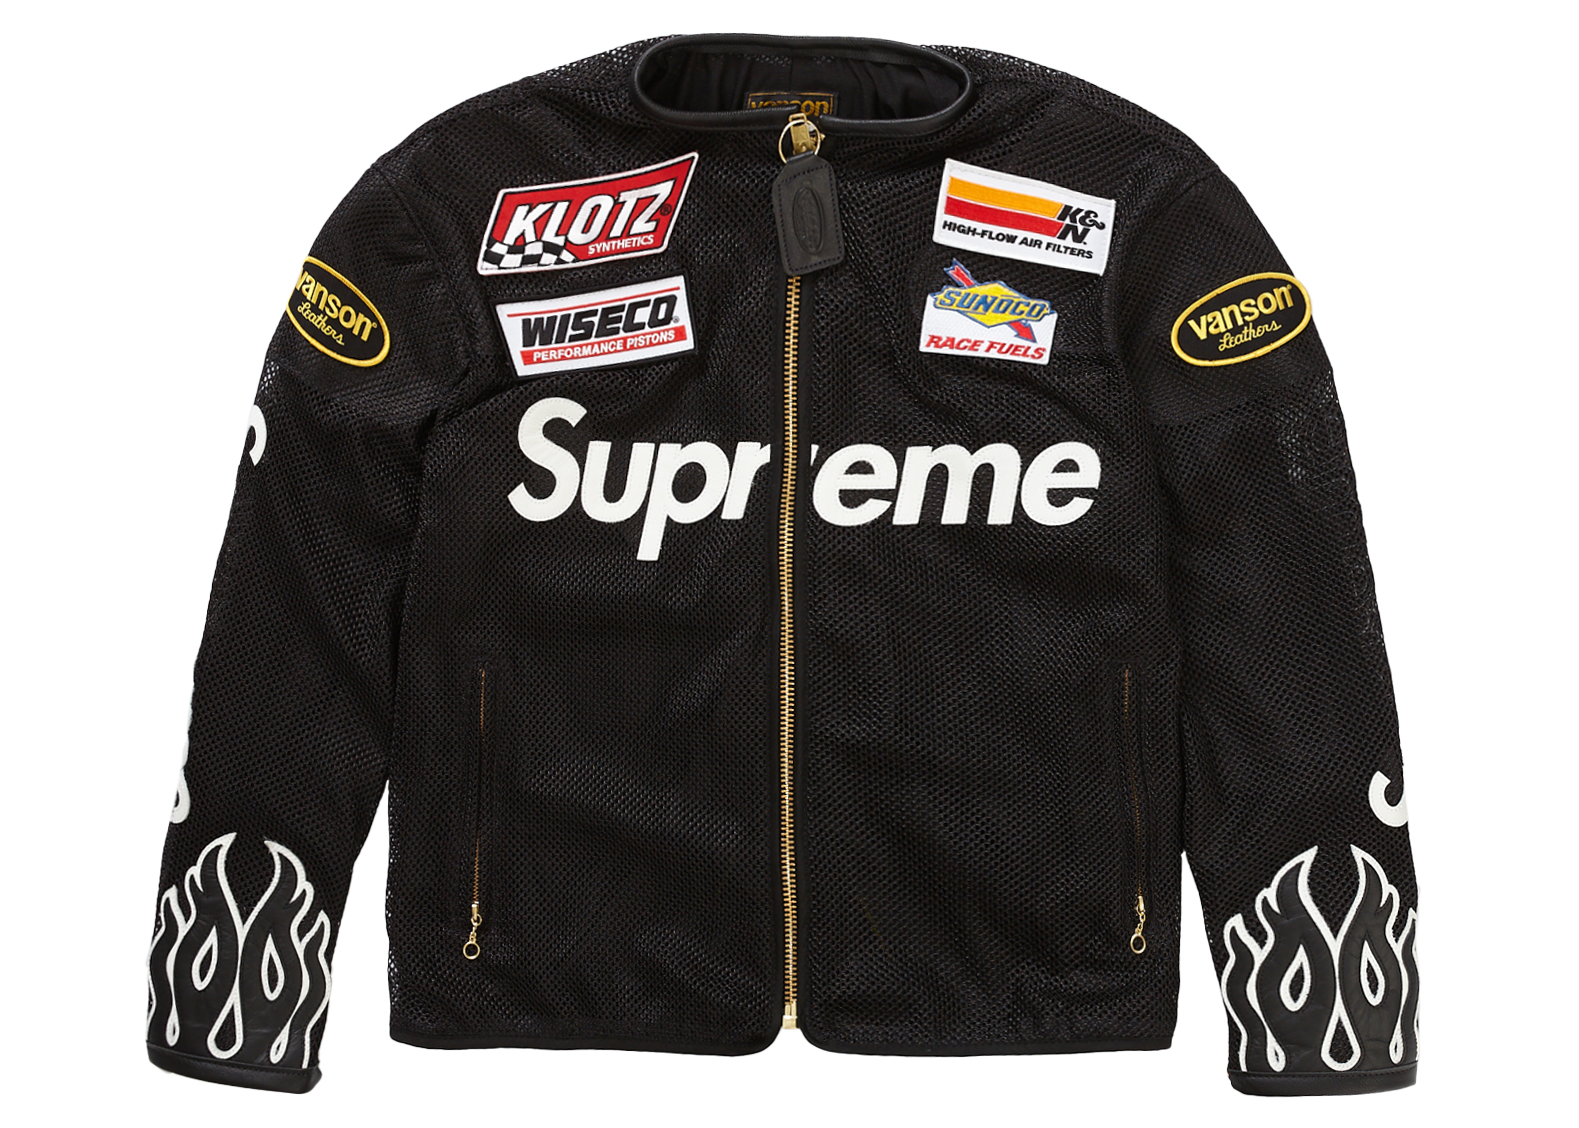 Supreme Vanson Leathers Codura Jacket